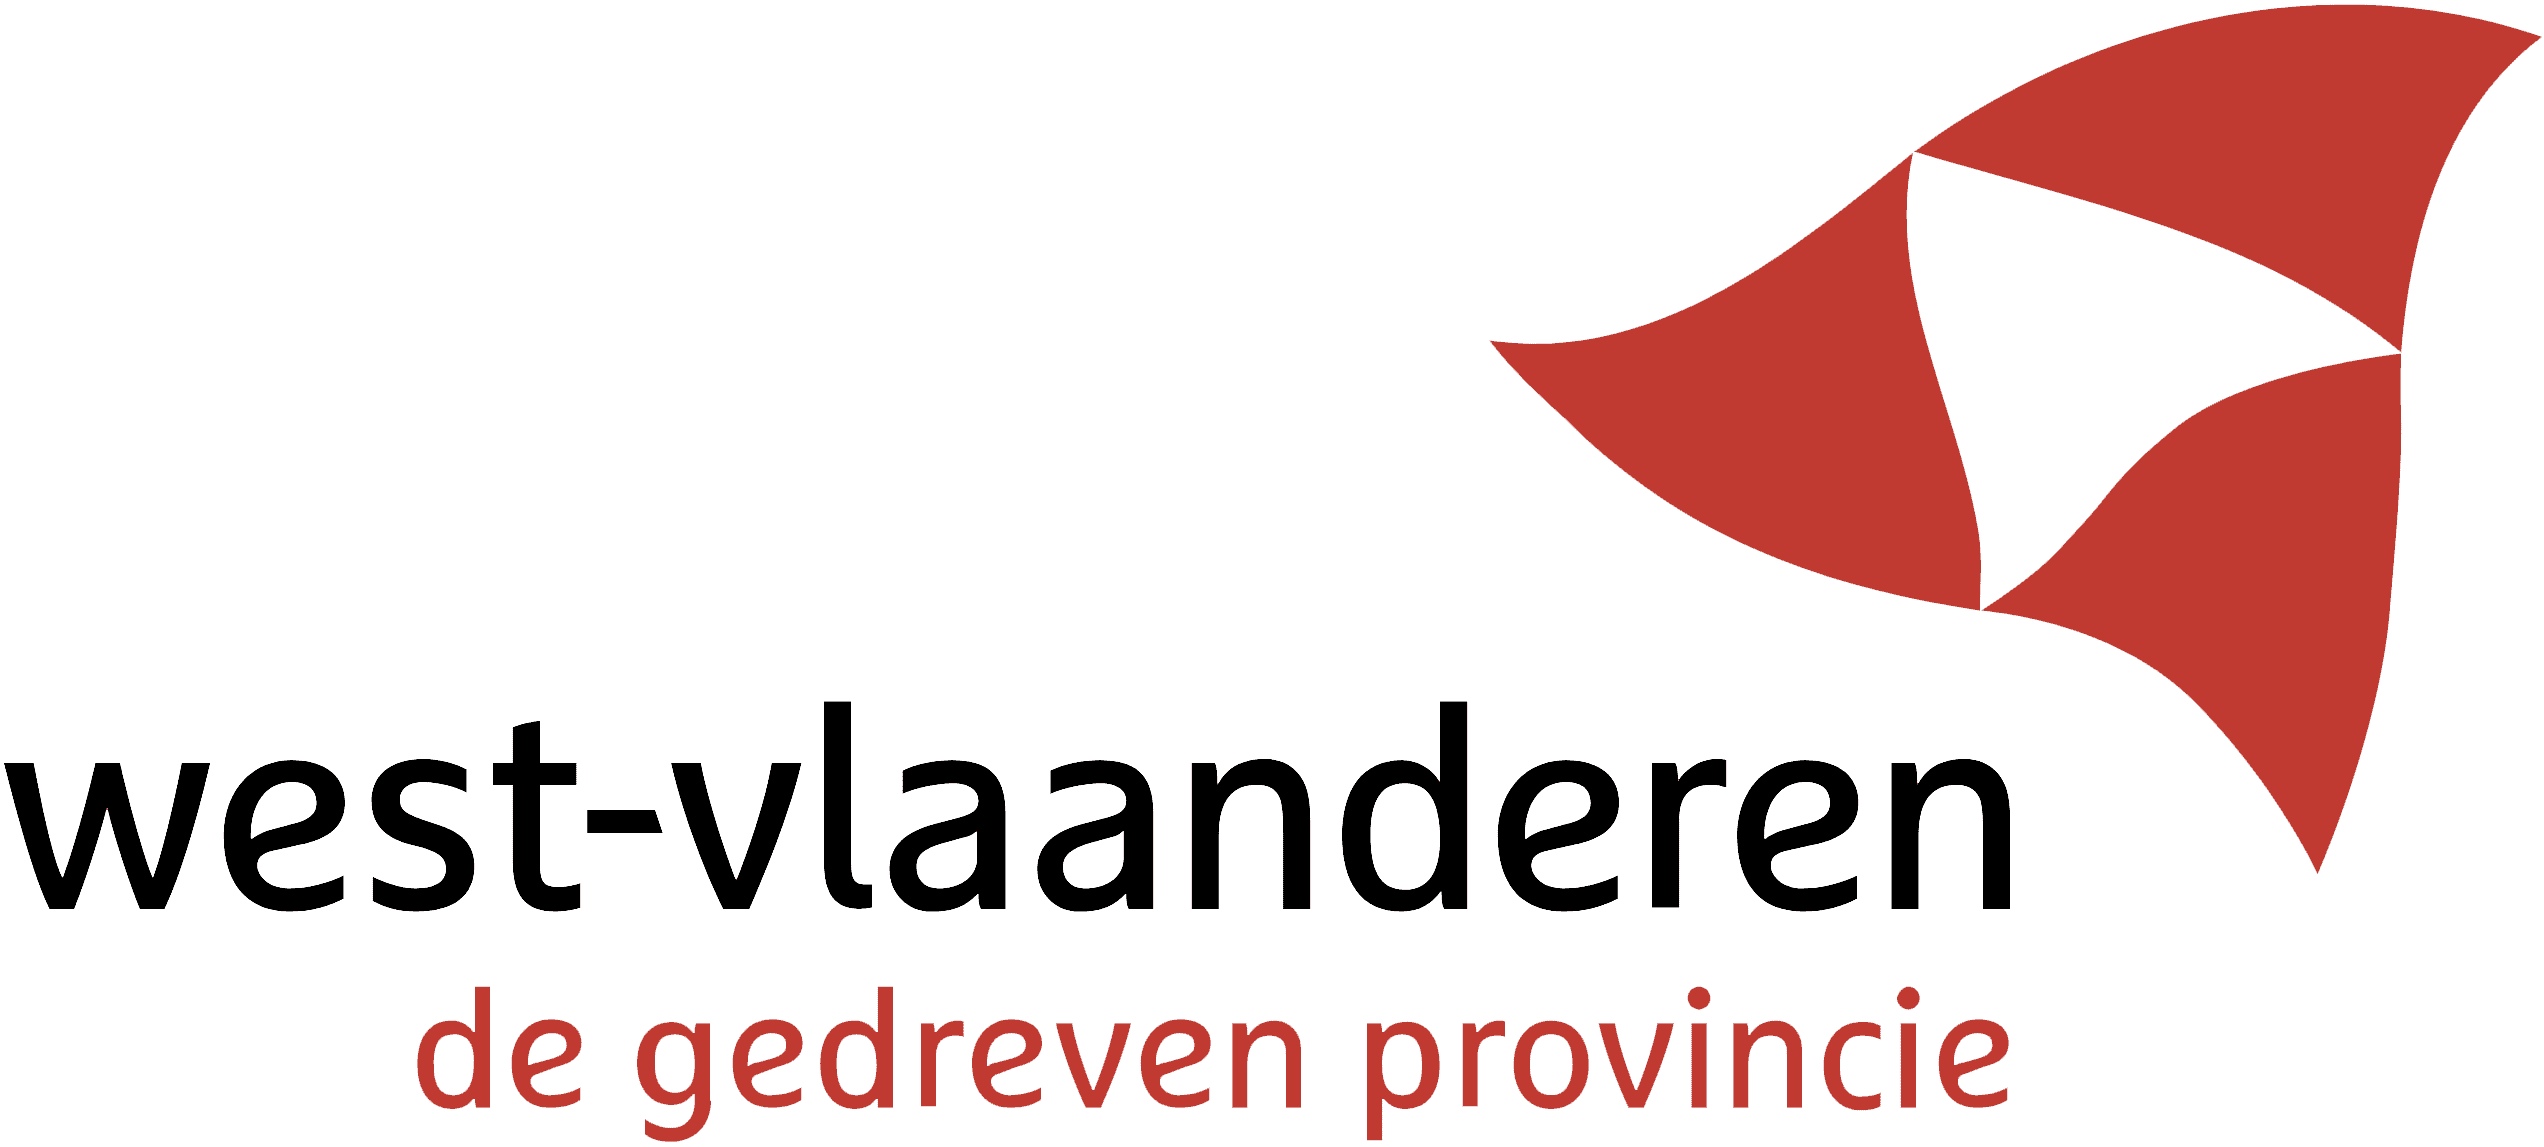 West Vlaanderen logo